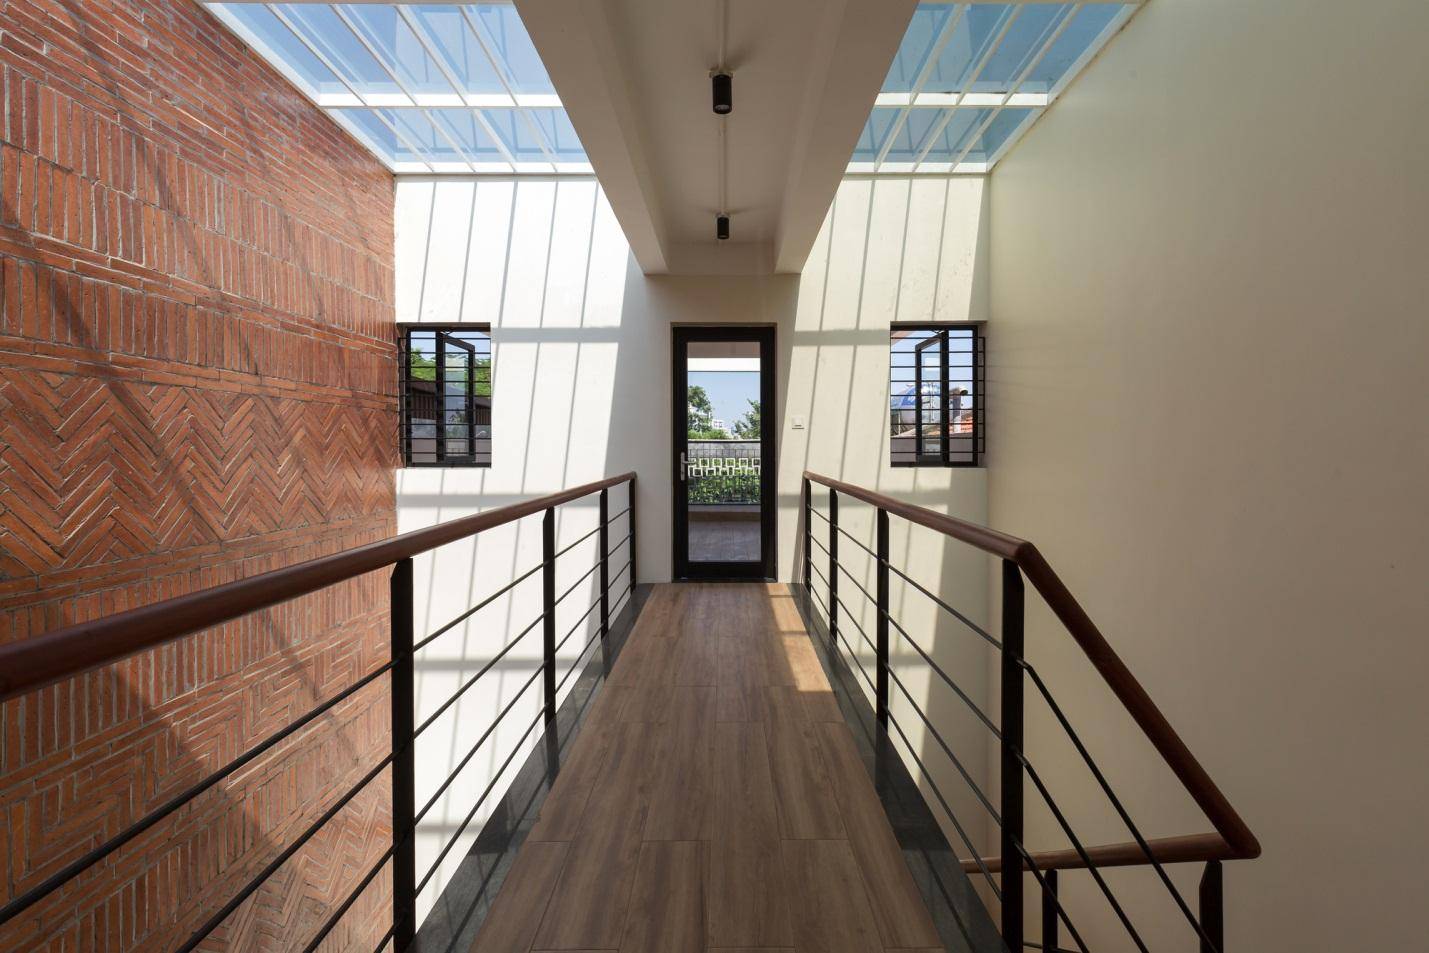 Thiết kế hiện đại kết hợp yếu tố truyền thống Bắc bộ của ngôi nhà 5 tầng ở Hà Nội - Ảnh 7